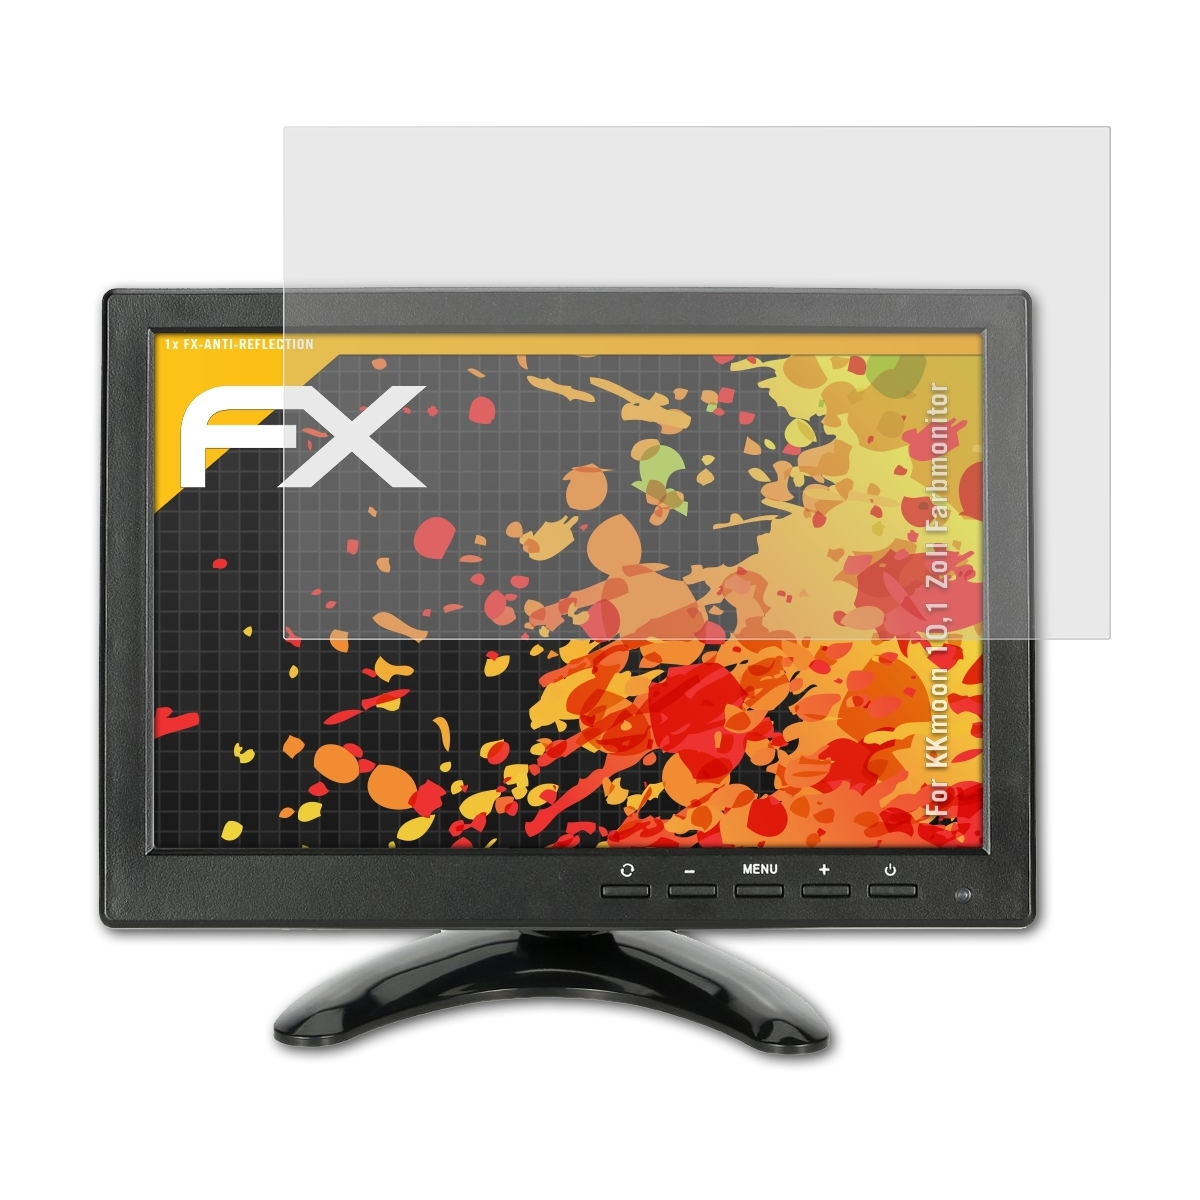 ATFOLIX FX-Antireflex Zoll Displayschutz(für 10,1 KKmoon Farbmonitor)